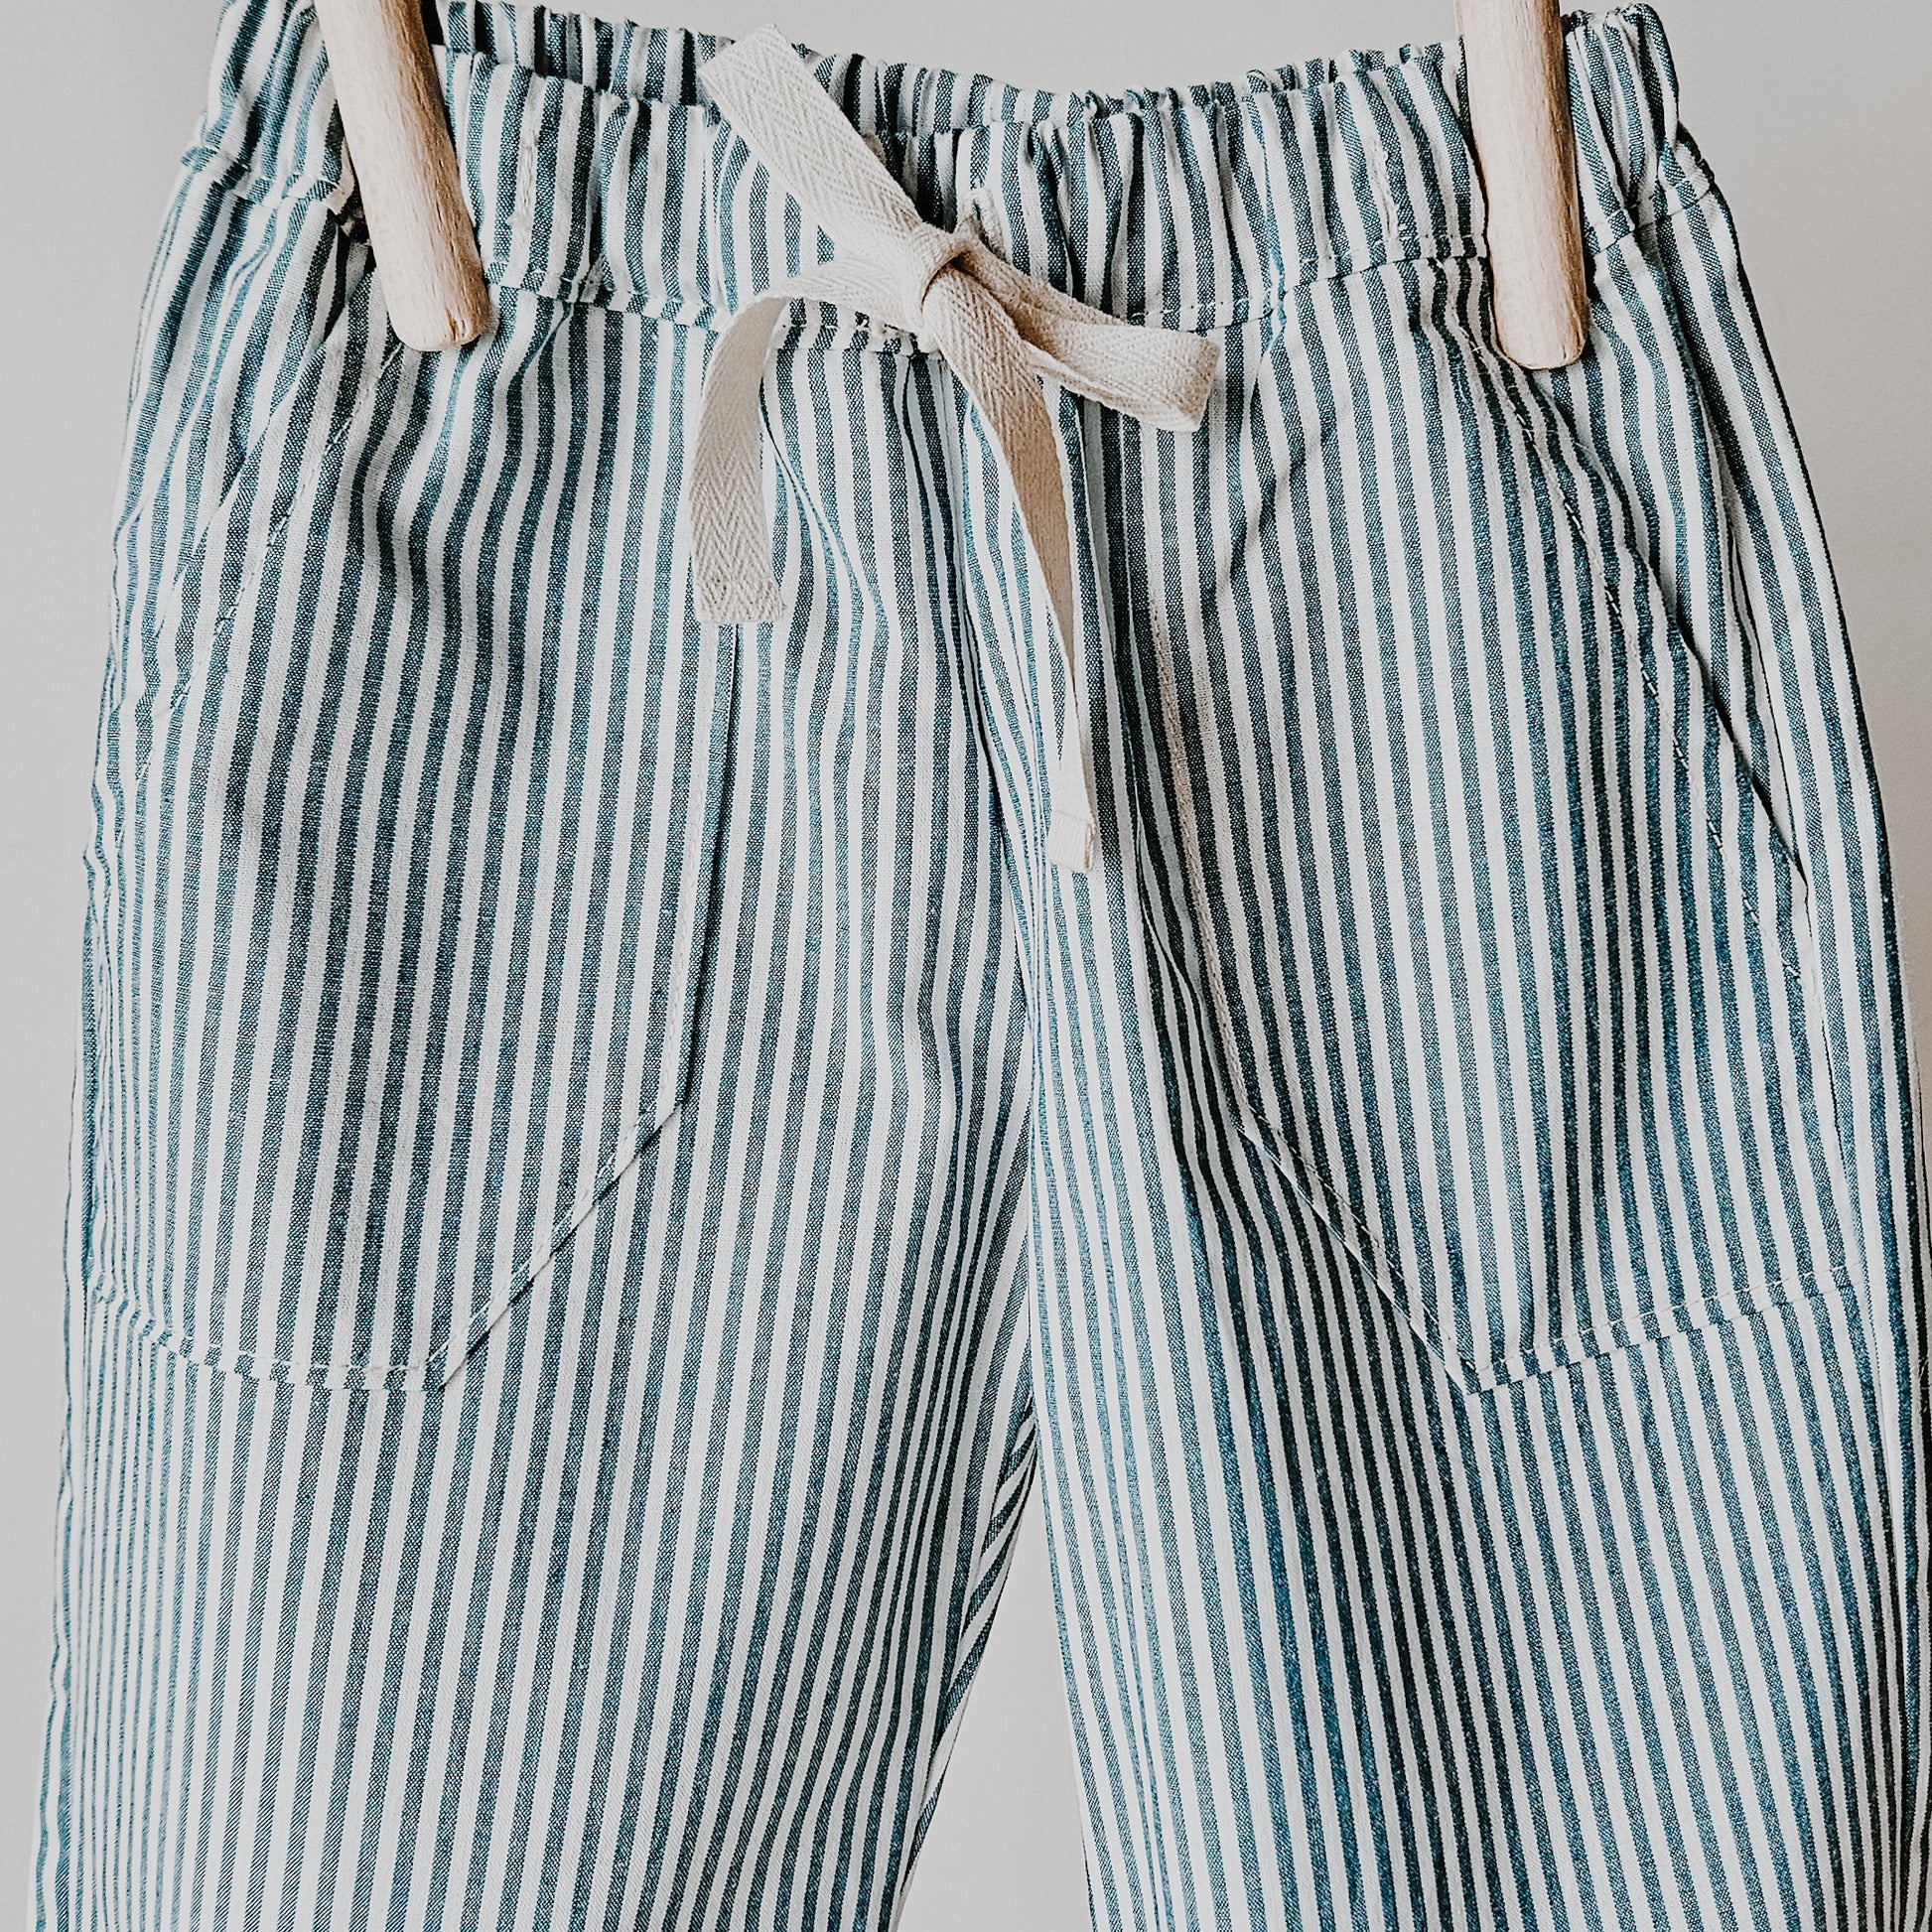 Pantalon en coton rayures bleues avec poches avant et lien sergé à la taille, mode enfantine, vêtement enfant, fait main, créateur français 